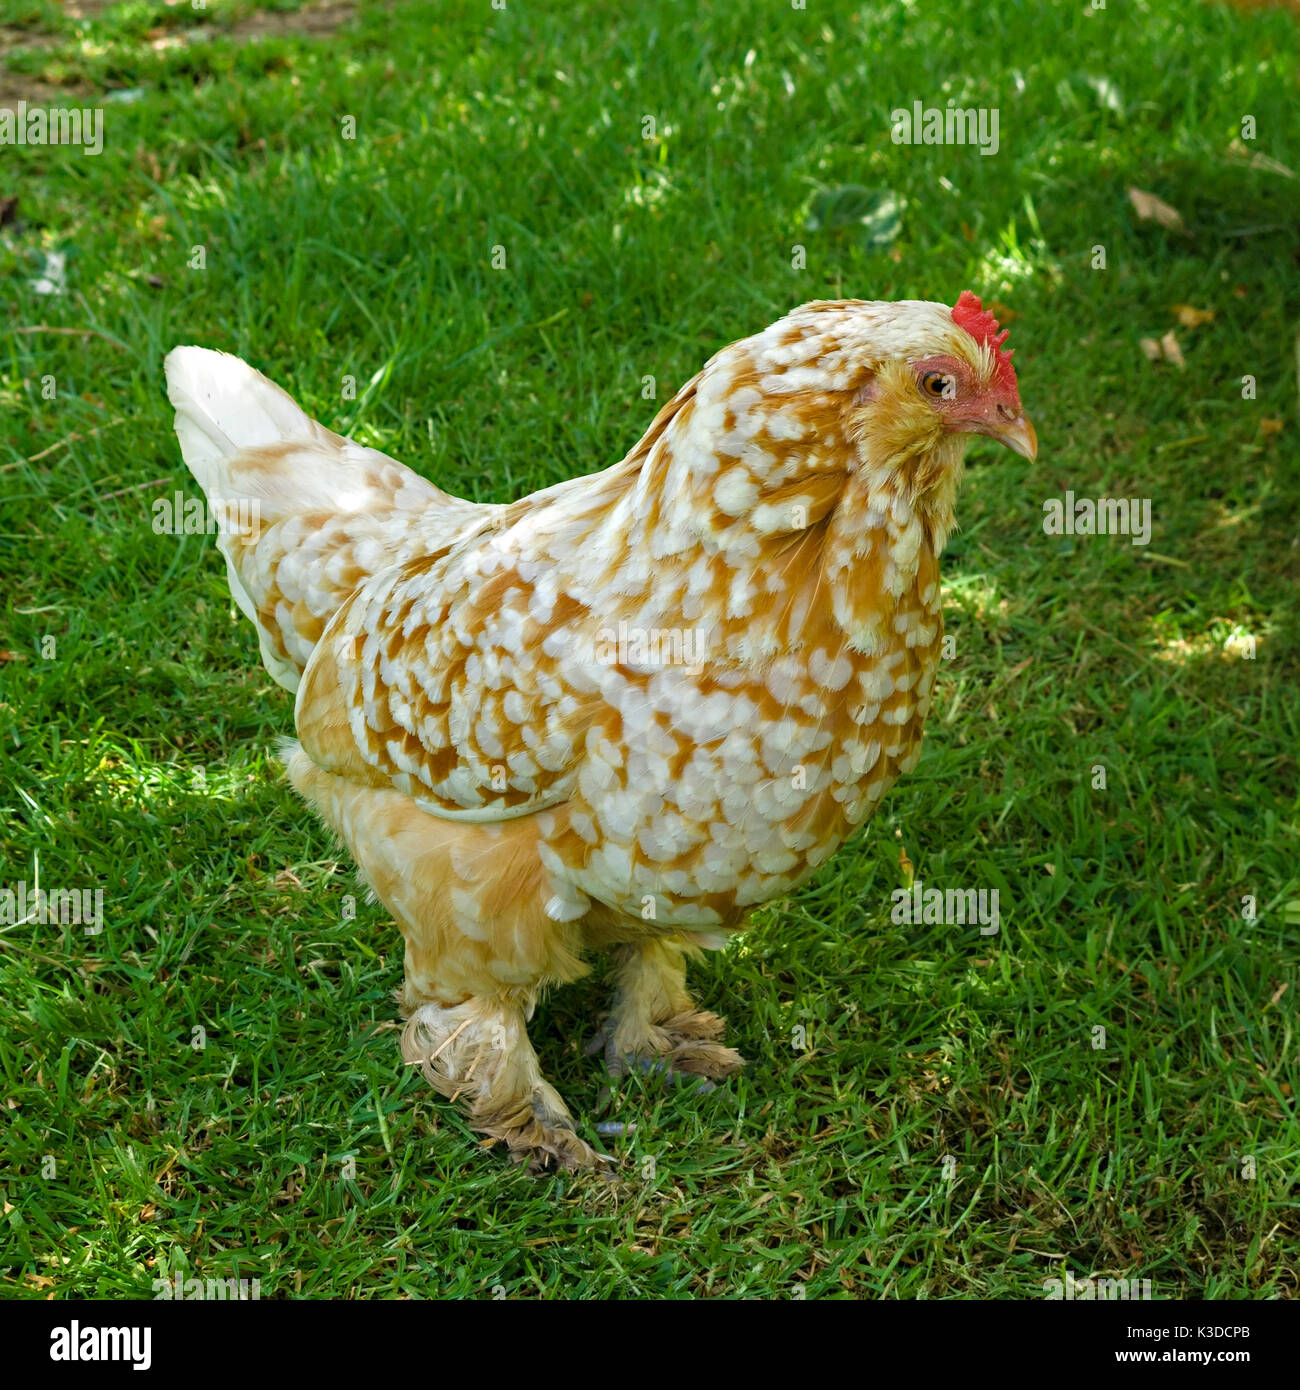 Fancy Free range chicken avec pieds emplumés on Green grass lawn Banque D'Images